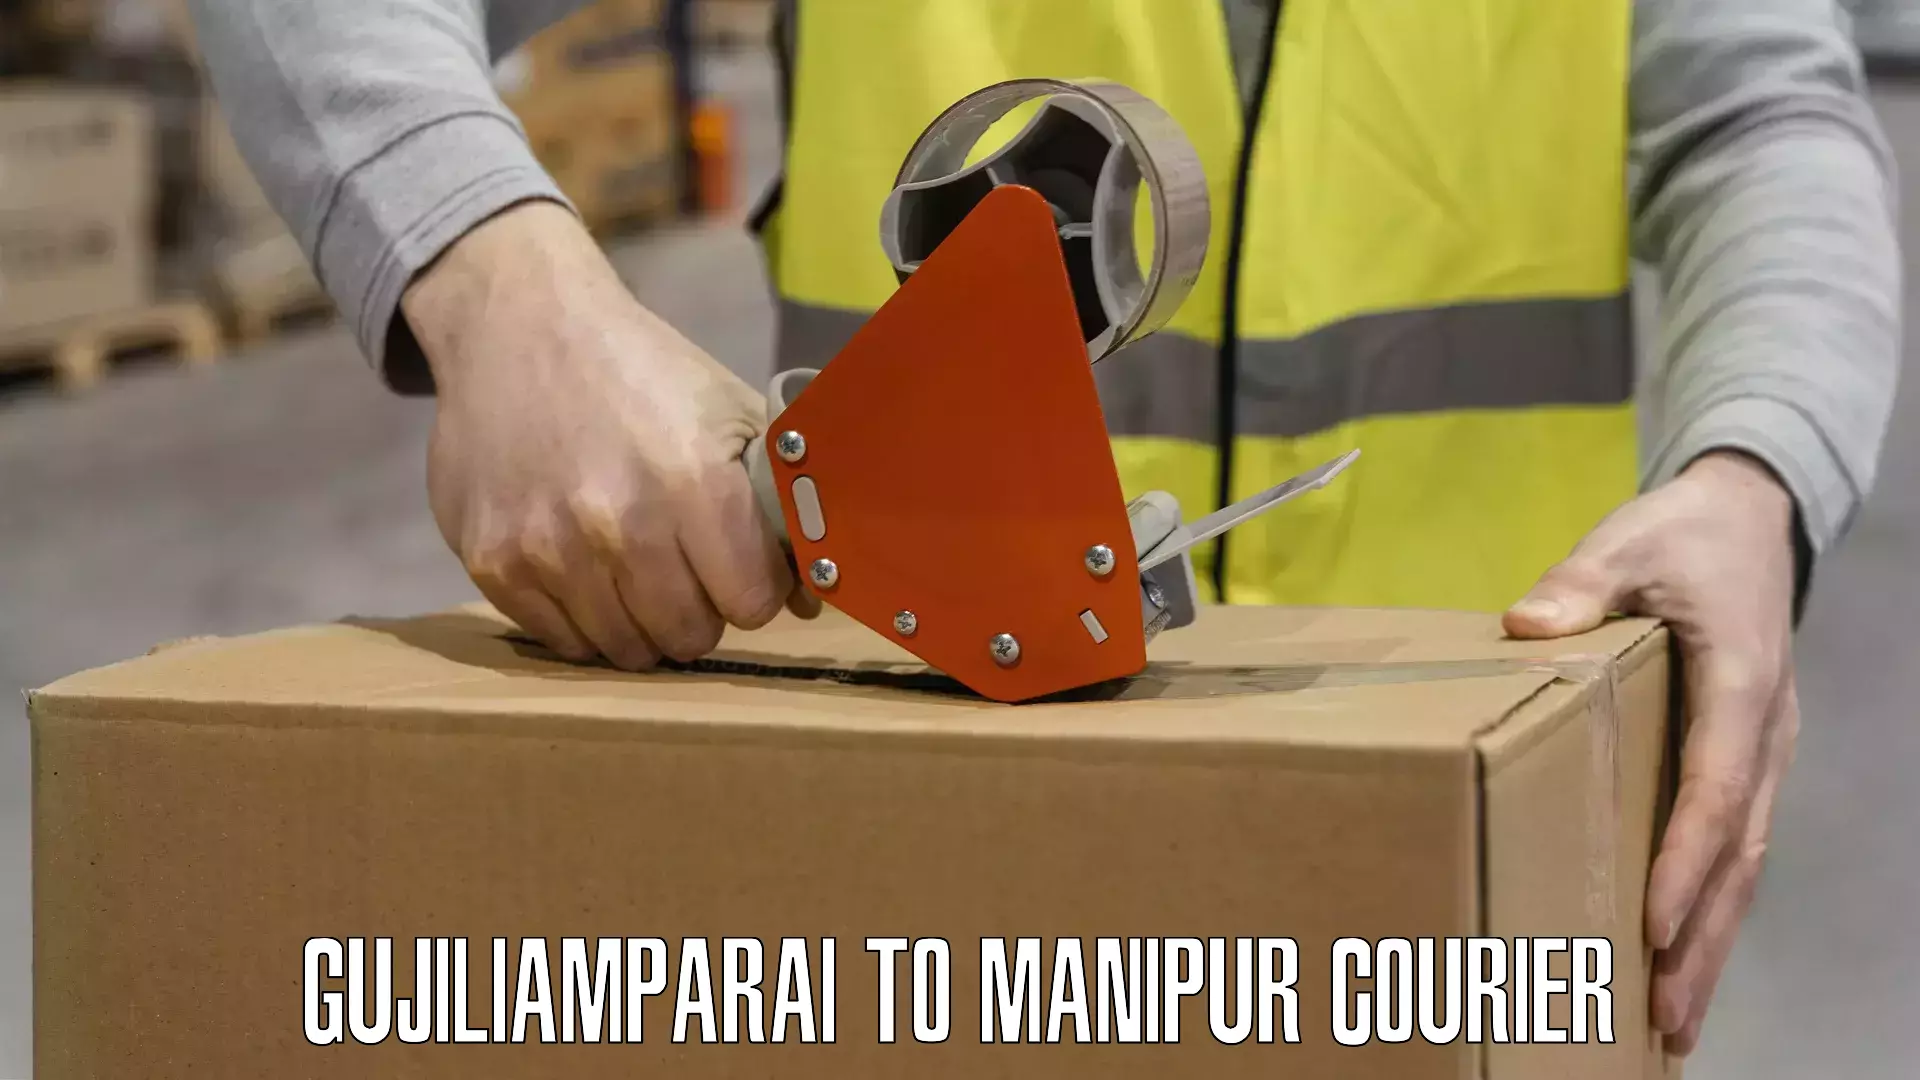 Customized delivery options Gujiliamparai to Senapati